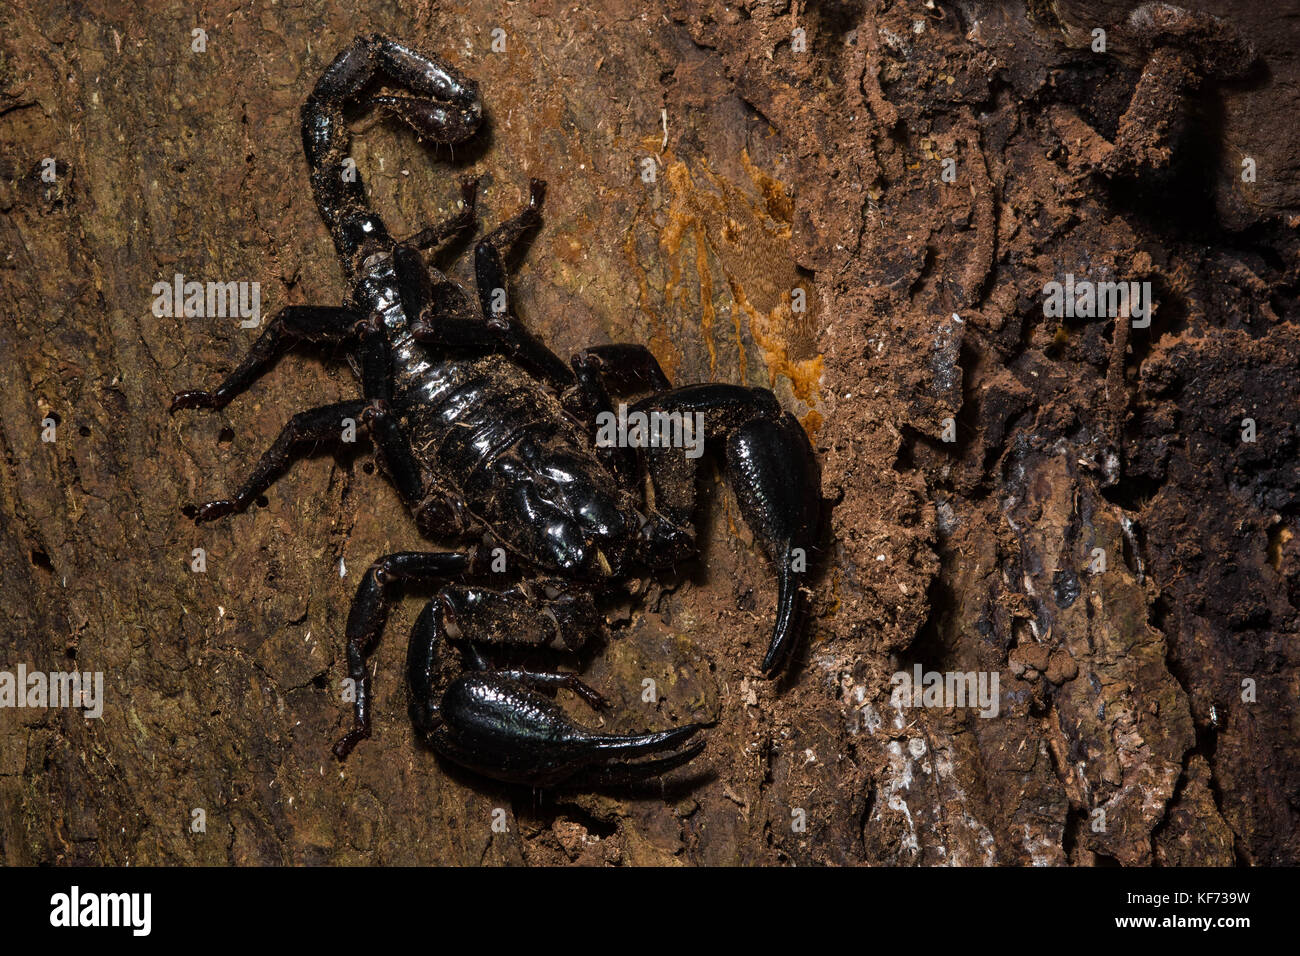 Une immense forêt asiatique (scorpion) de l'espèce Heterometrus jungle de Bornéo. Banque D'Images